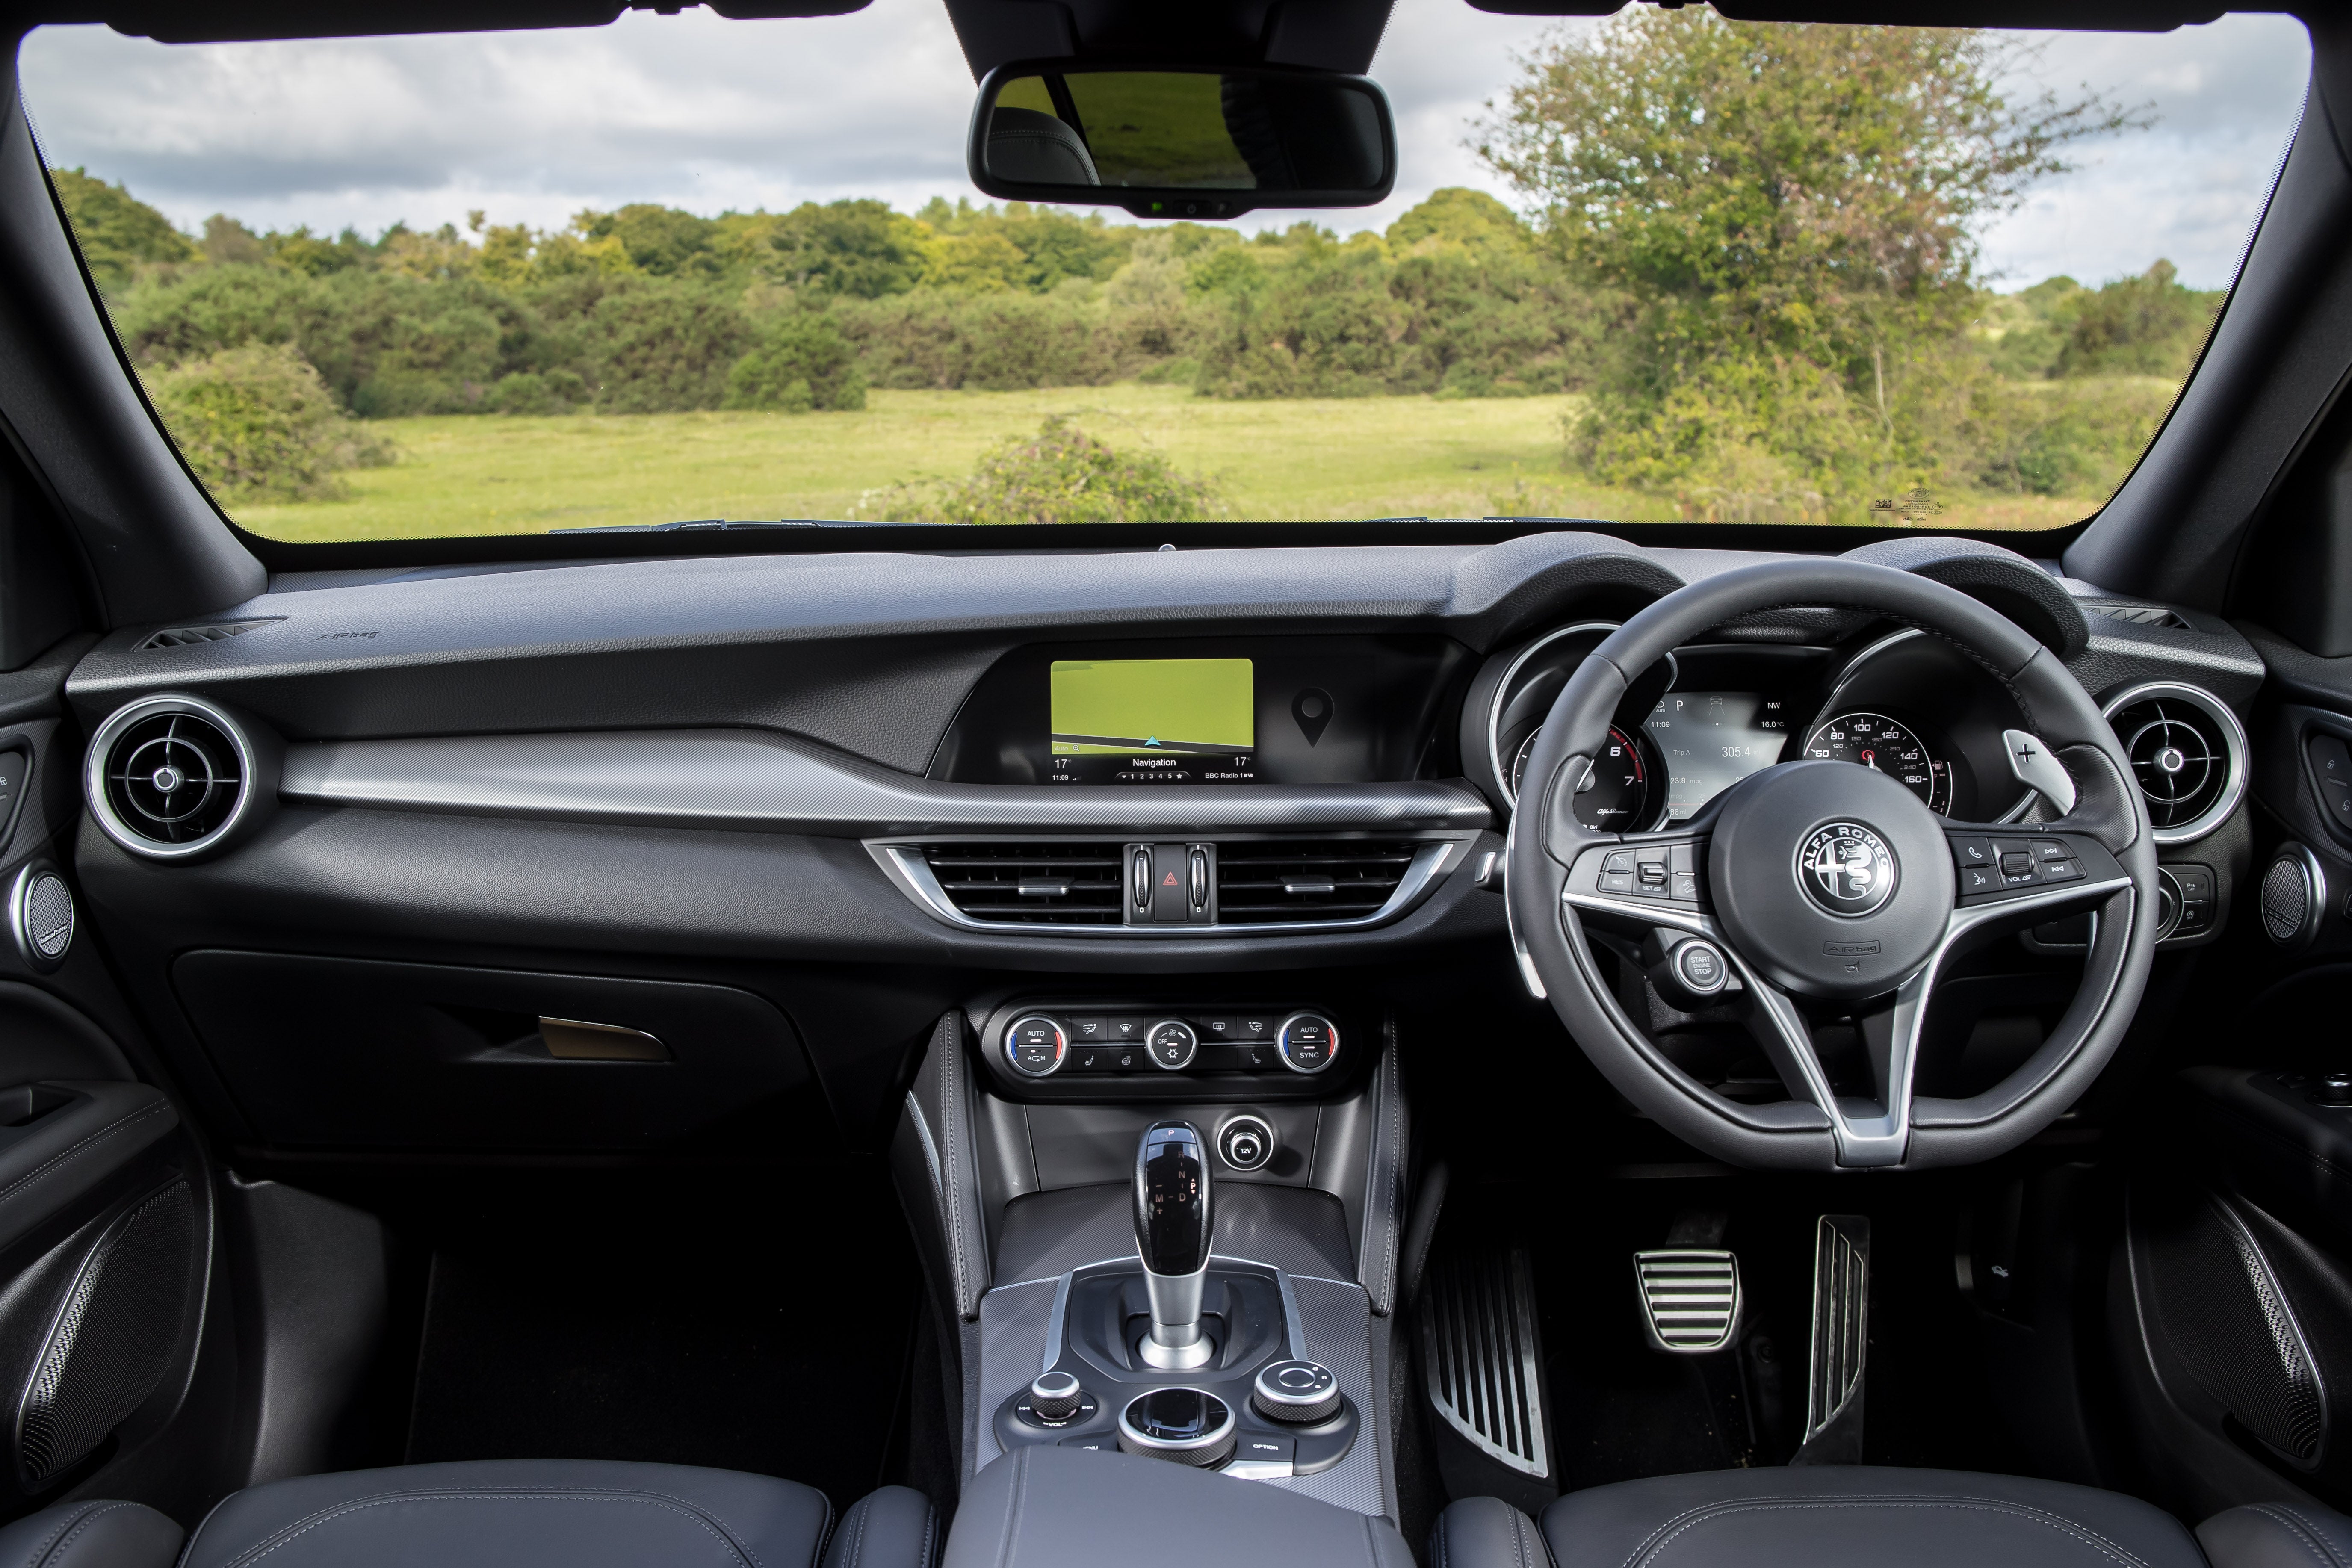 Alfa Romeo Stelvio Review: Interior